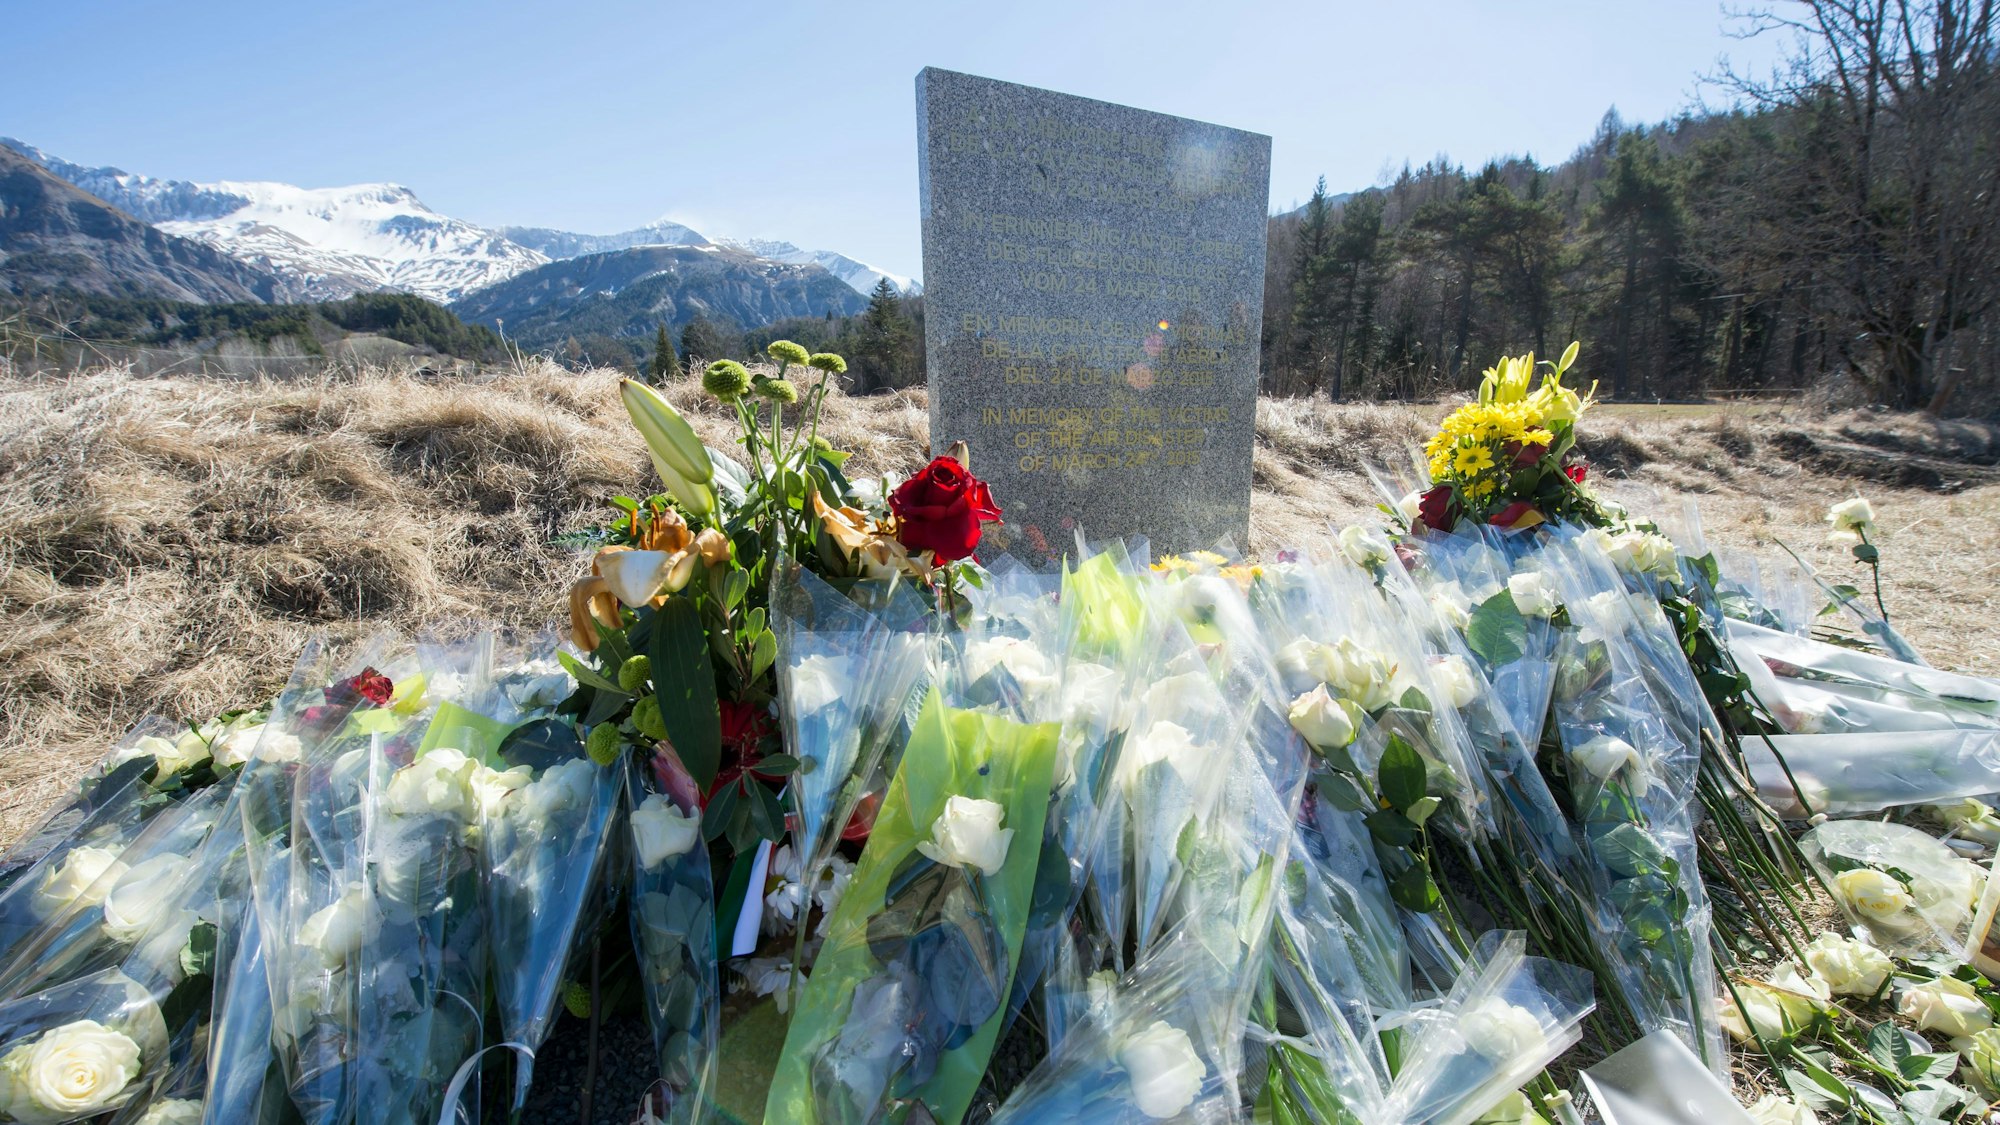 Inmitten von Blumen steht eine steinerne Gedenkstele mit der Aufschrift "In Erinnerung an die Opfer des Flugzeugunglücks vom 24. März 2015" in den vier Sprachen Englisch, Deutsch, Spanisch und Französisch in La Vernet, Frankreich, nahe der Unglücksstelle des abgestürzten Germanwings-Fluges 4U9525 vor dem Bergpanorama.